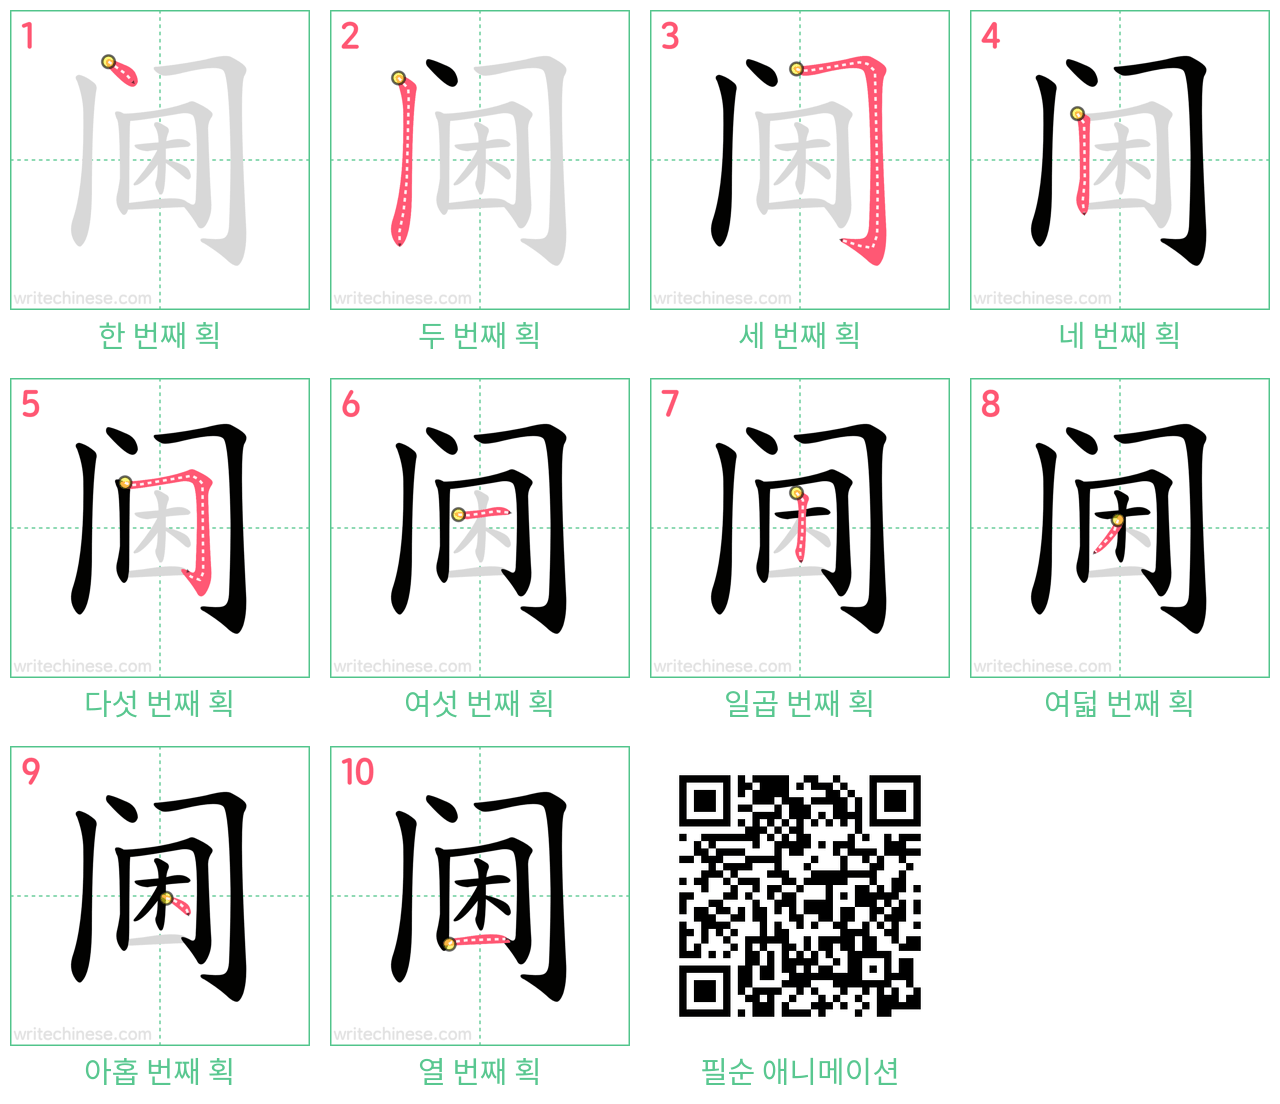 阃 step-by-step stroke order diagrams